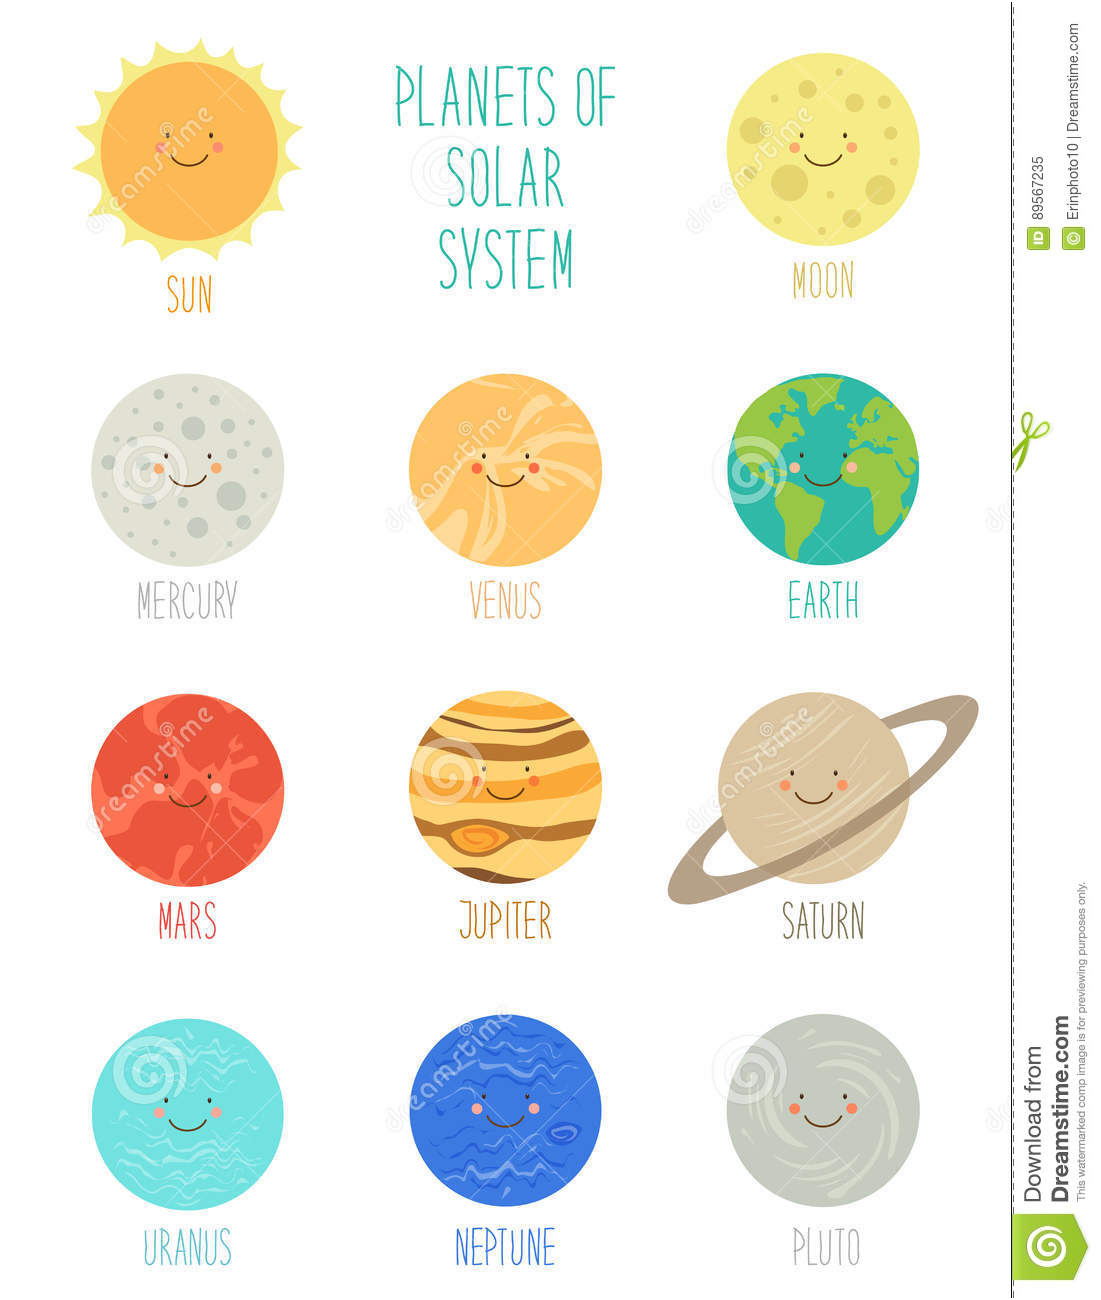 personnages de dessin anime de sourire mignons des planetes du concernant dessin du systeme solaire